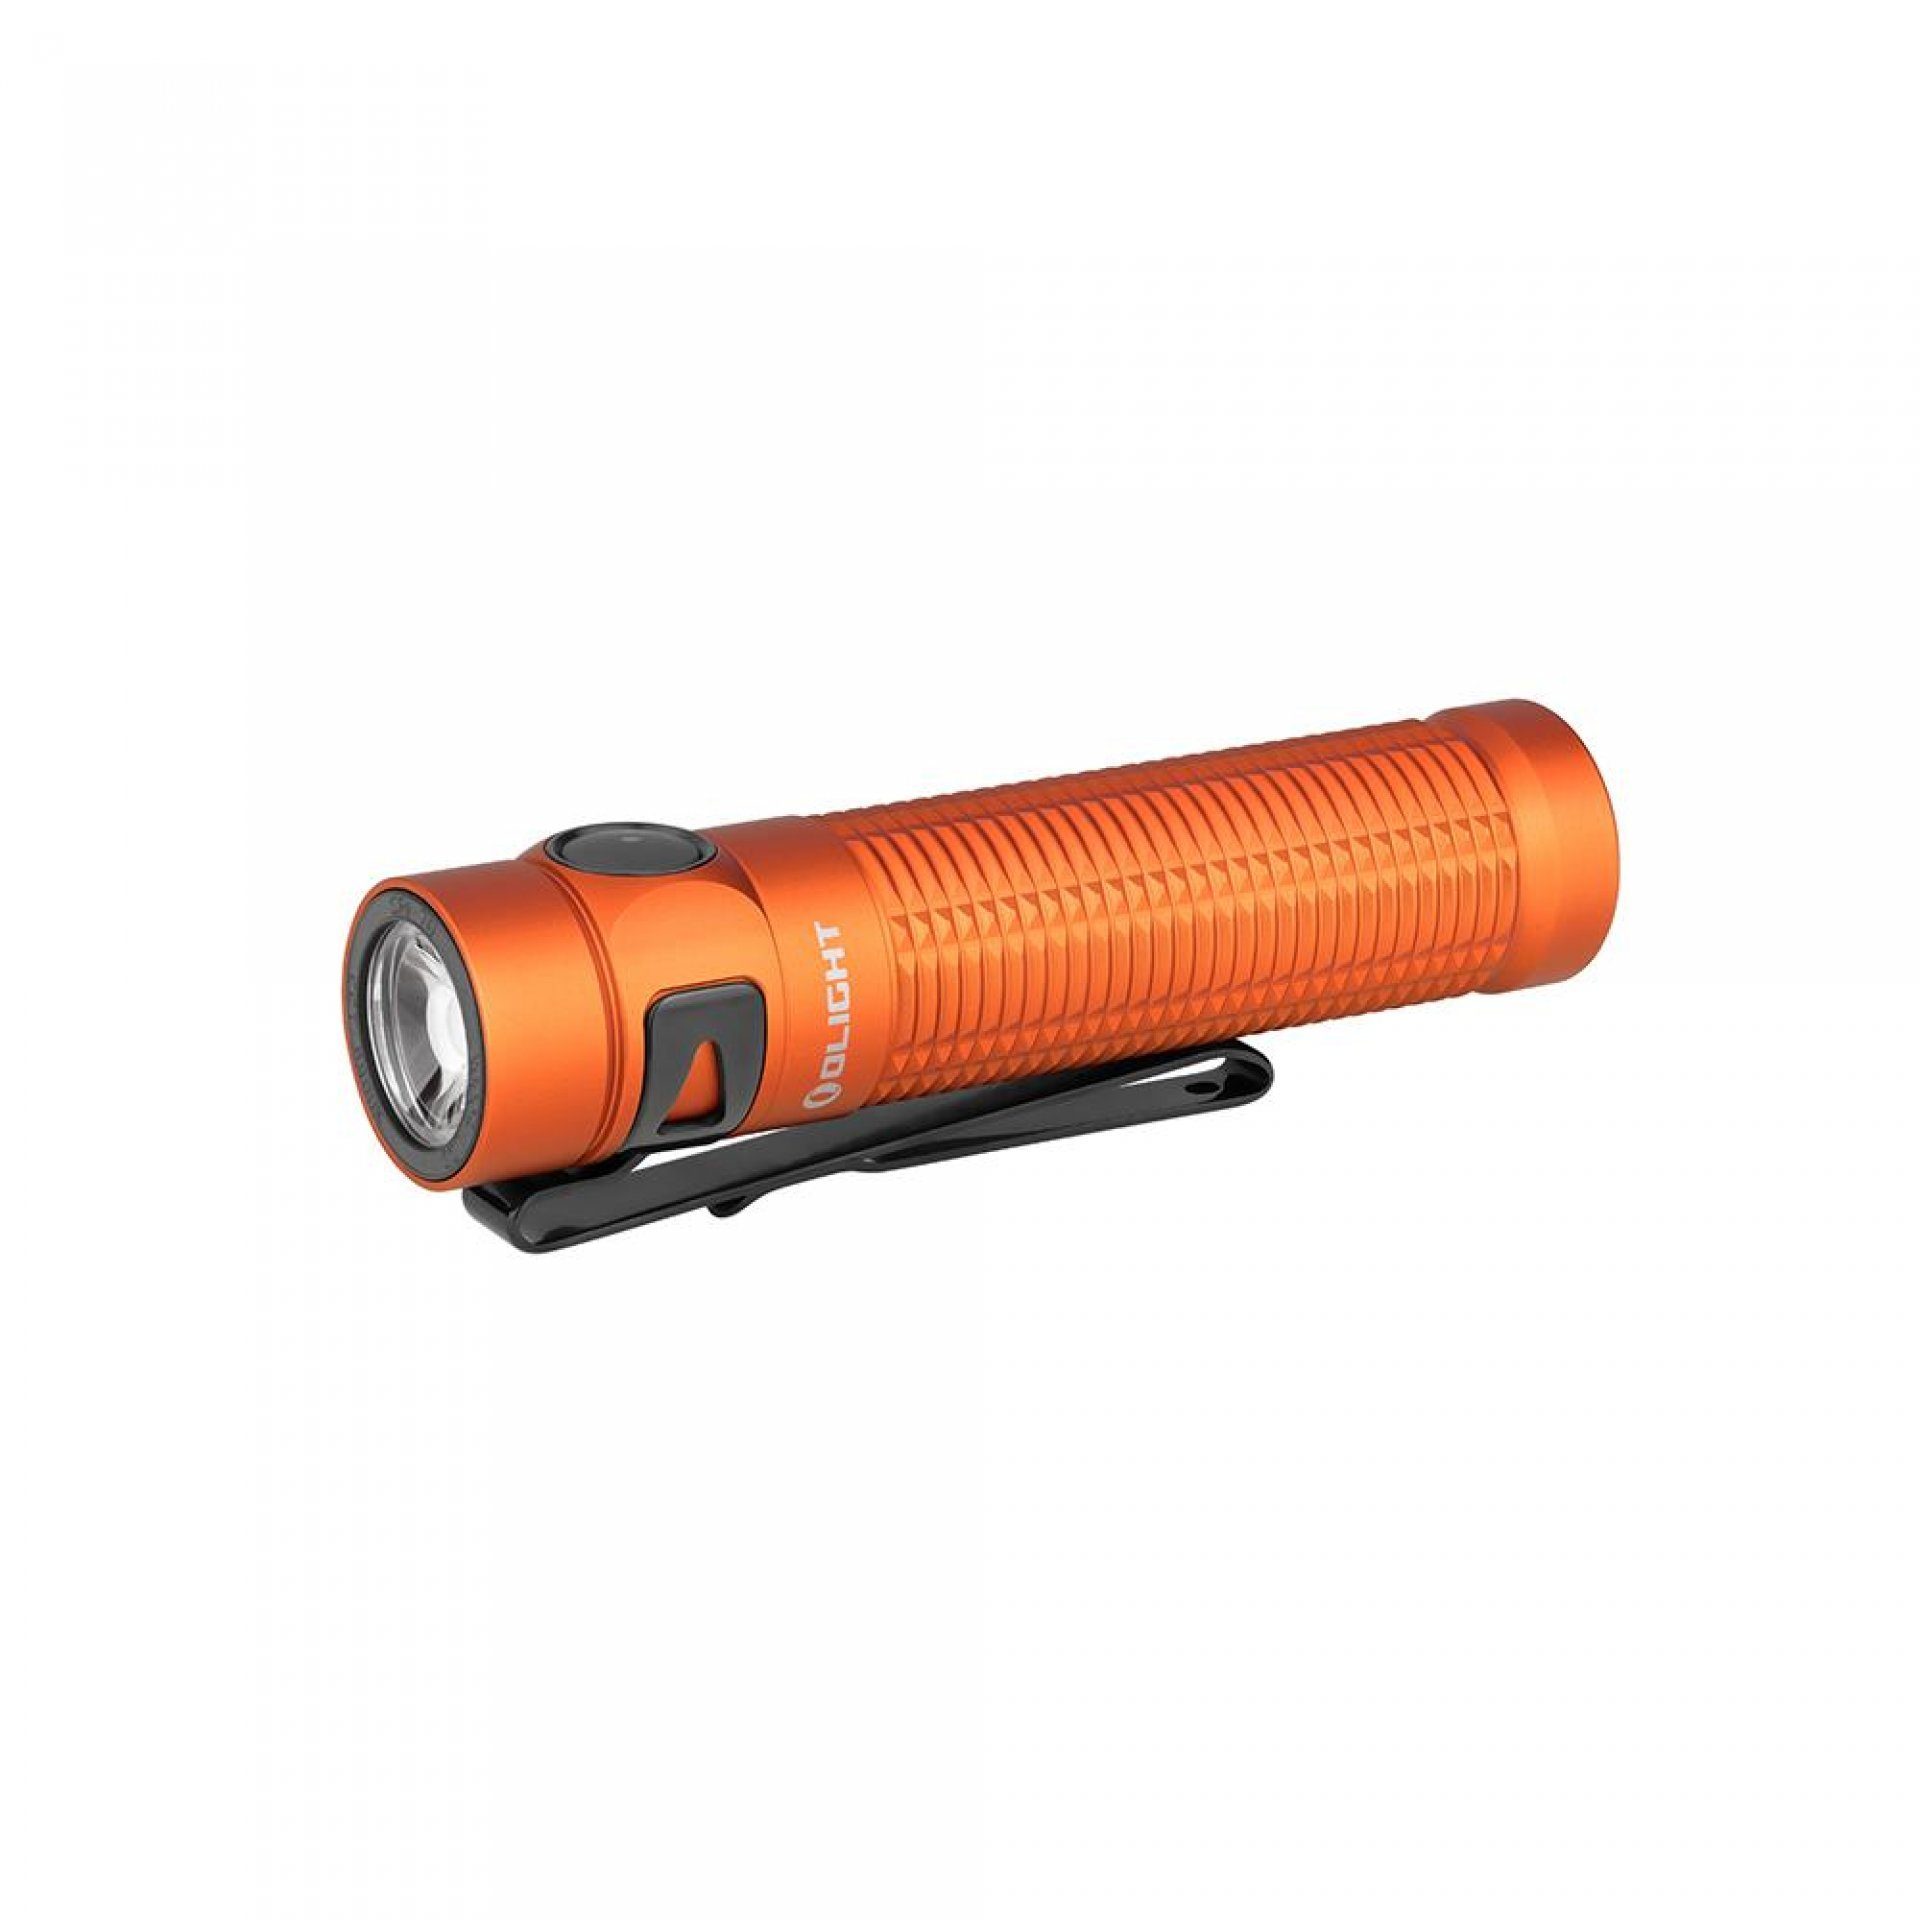 OLIGHT Taschenlampe Baton 3 Pro Kaltweiß LED Taschenlampe, Extrem Hell 1500 Lumen, Extrem Hell 1500 Lumen 175 Meter, USB aufladbar, mit 6 Lichtmodi Orange